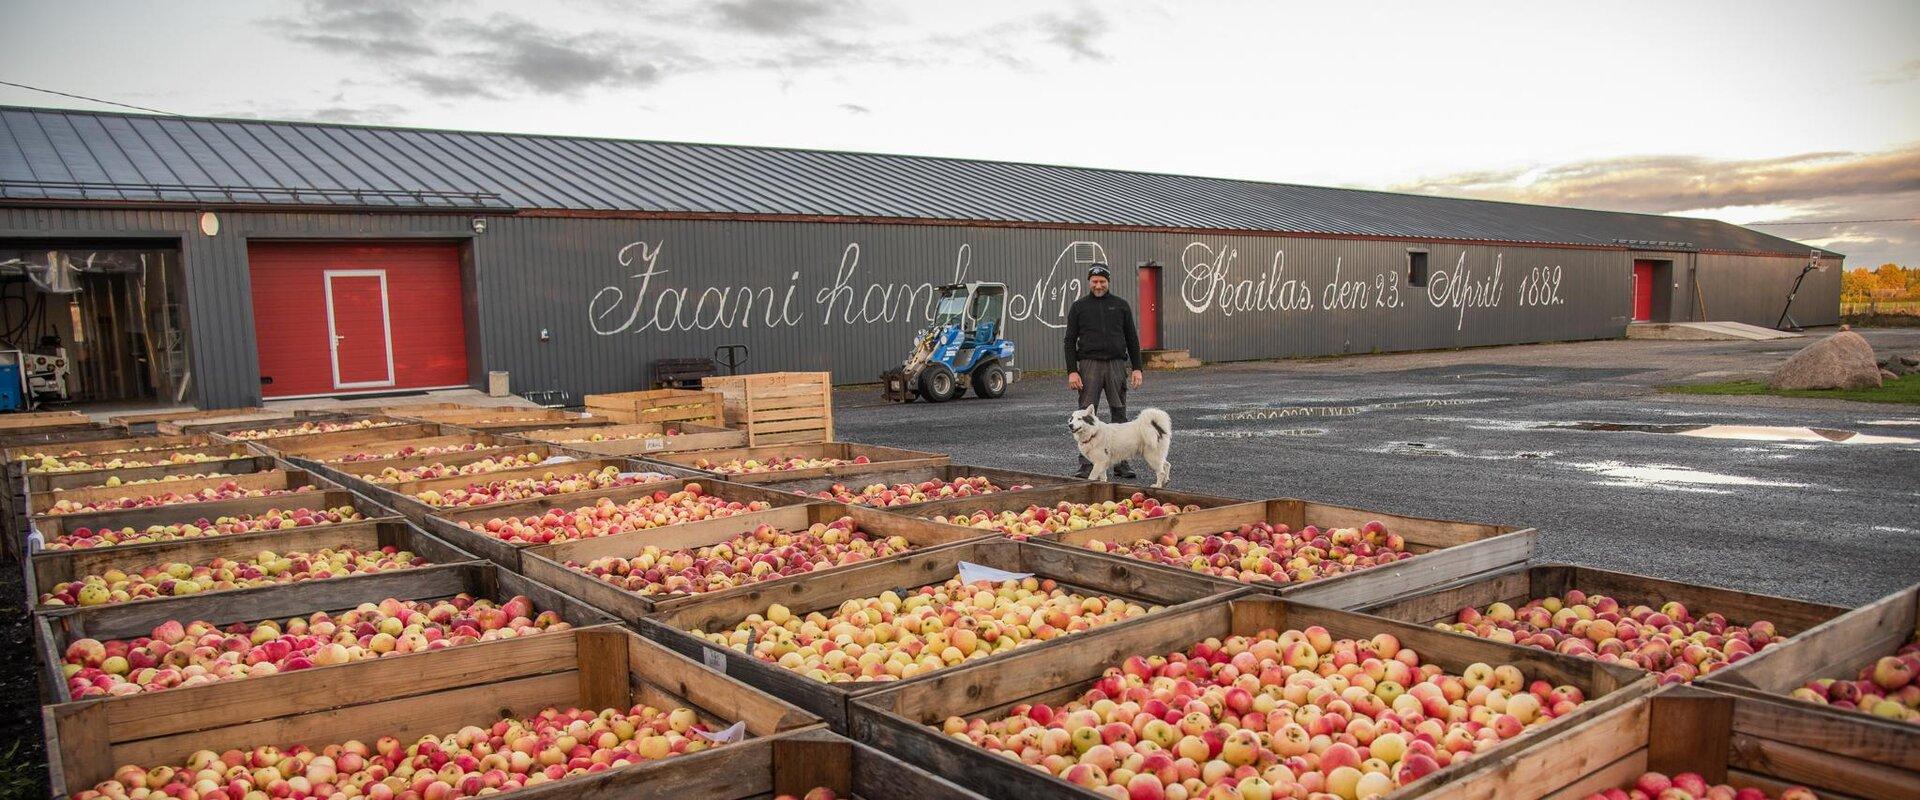 Jaanihanson siideripanimossa valmistetaan siideriä aidoista virolaisista omenista. Mehu puristetaan paikan päällä loppusyksyllä, juuri valmistuneista 